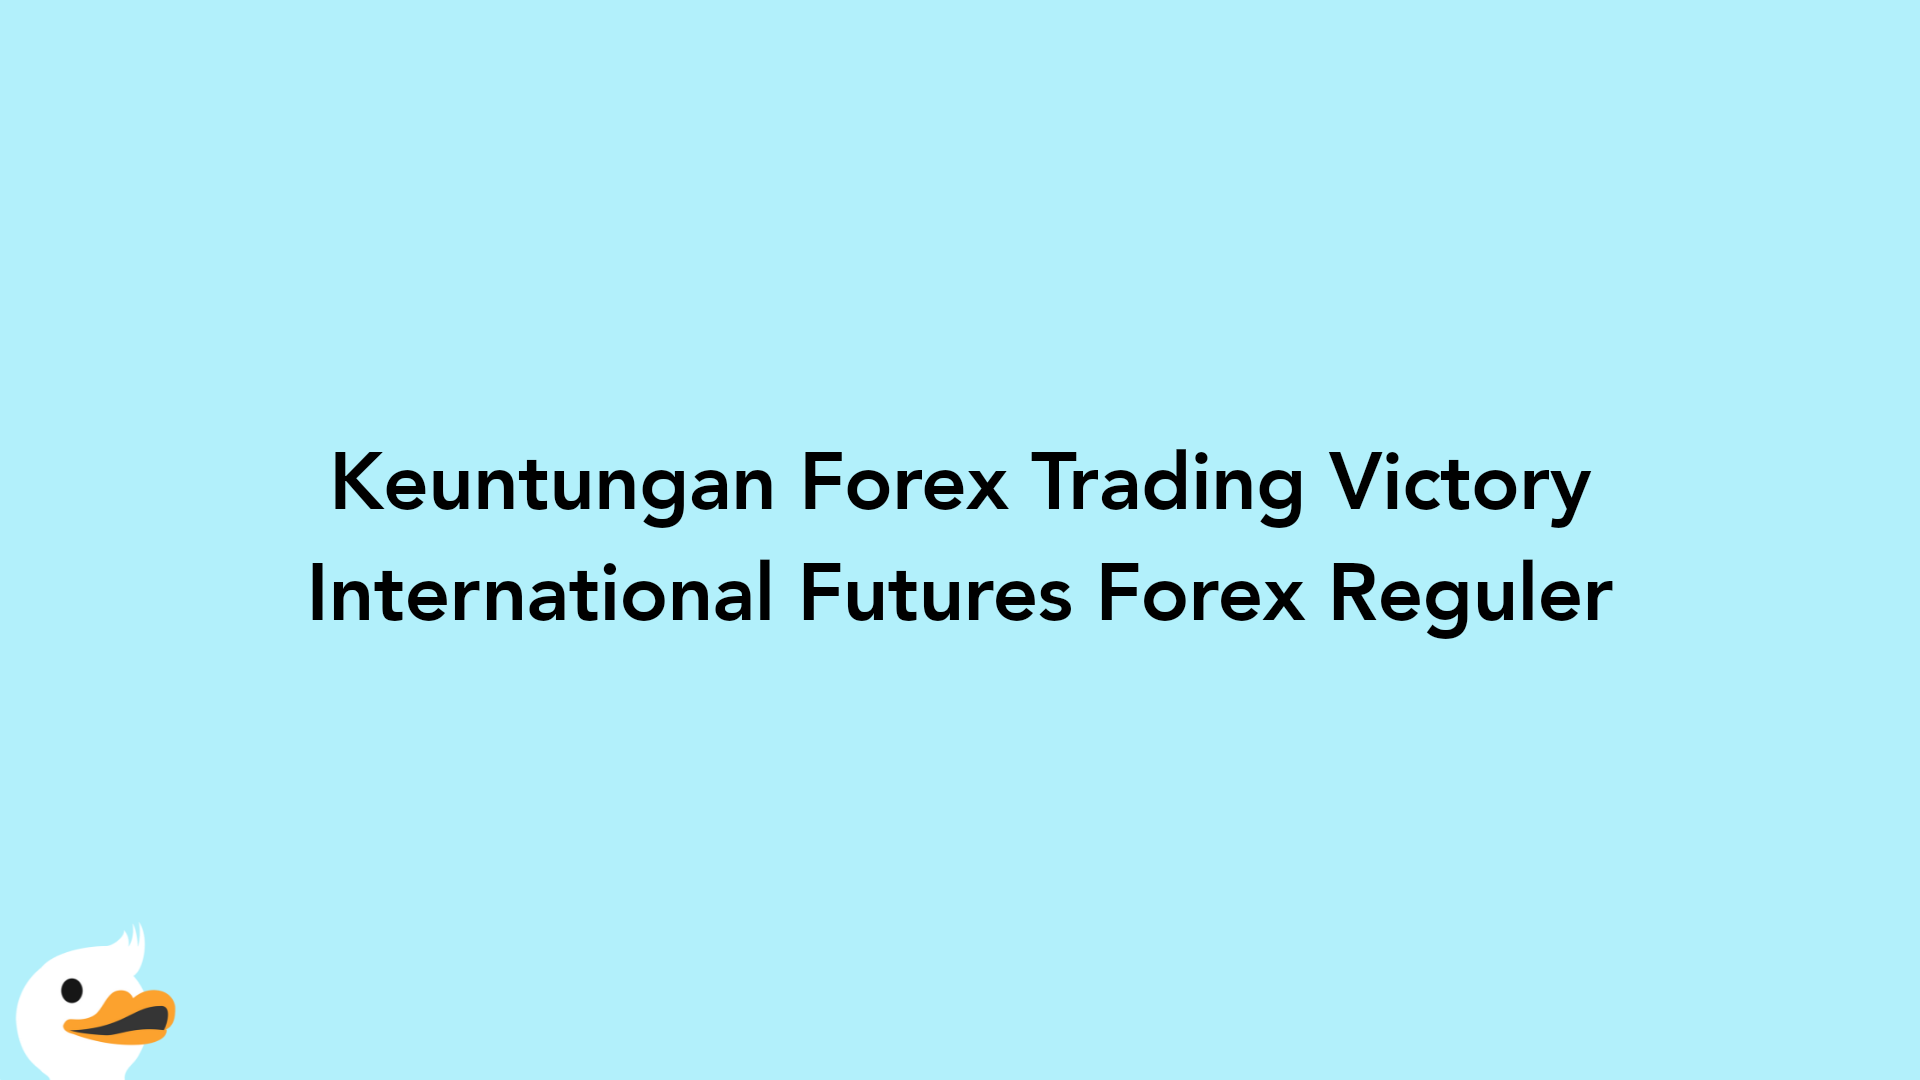 Keuntungan Forex Trading Victory International Futures Forex Reguler